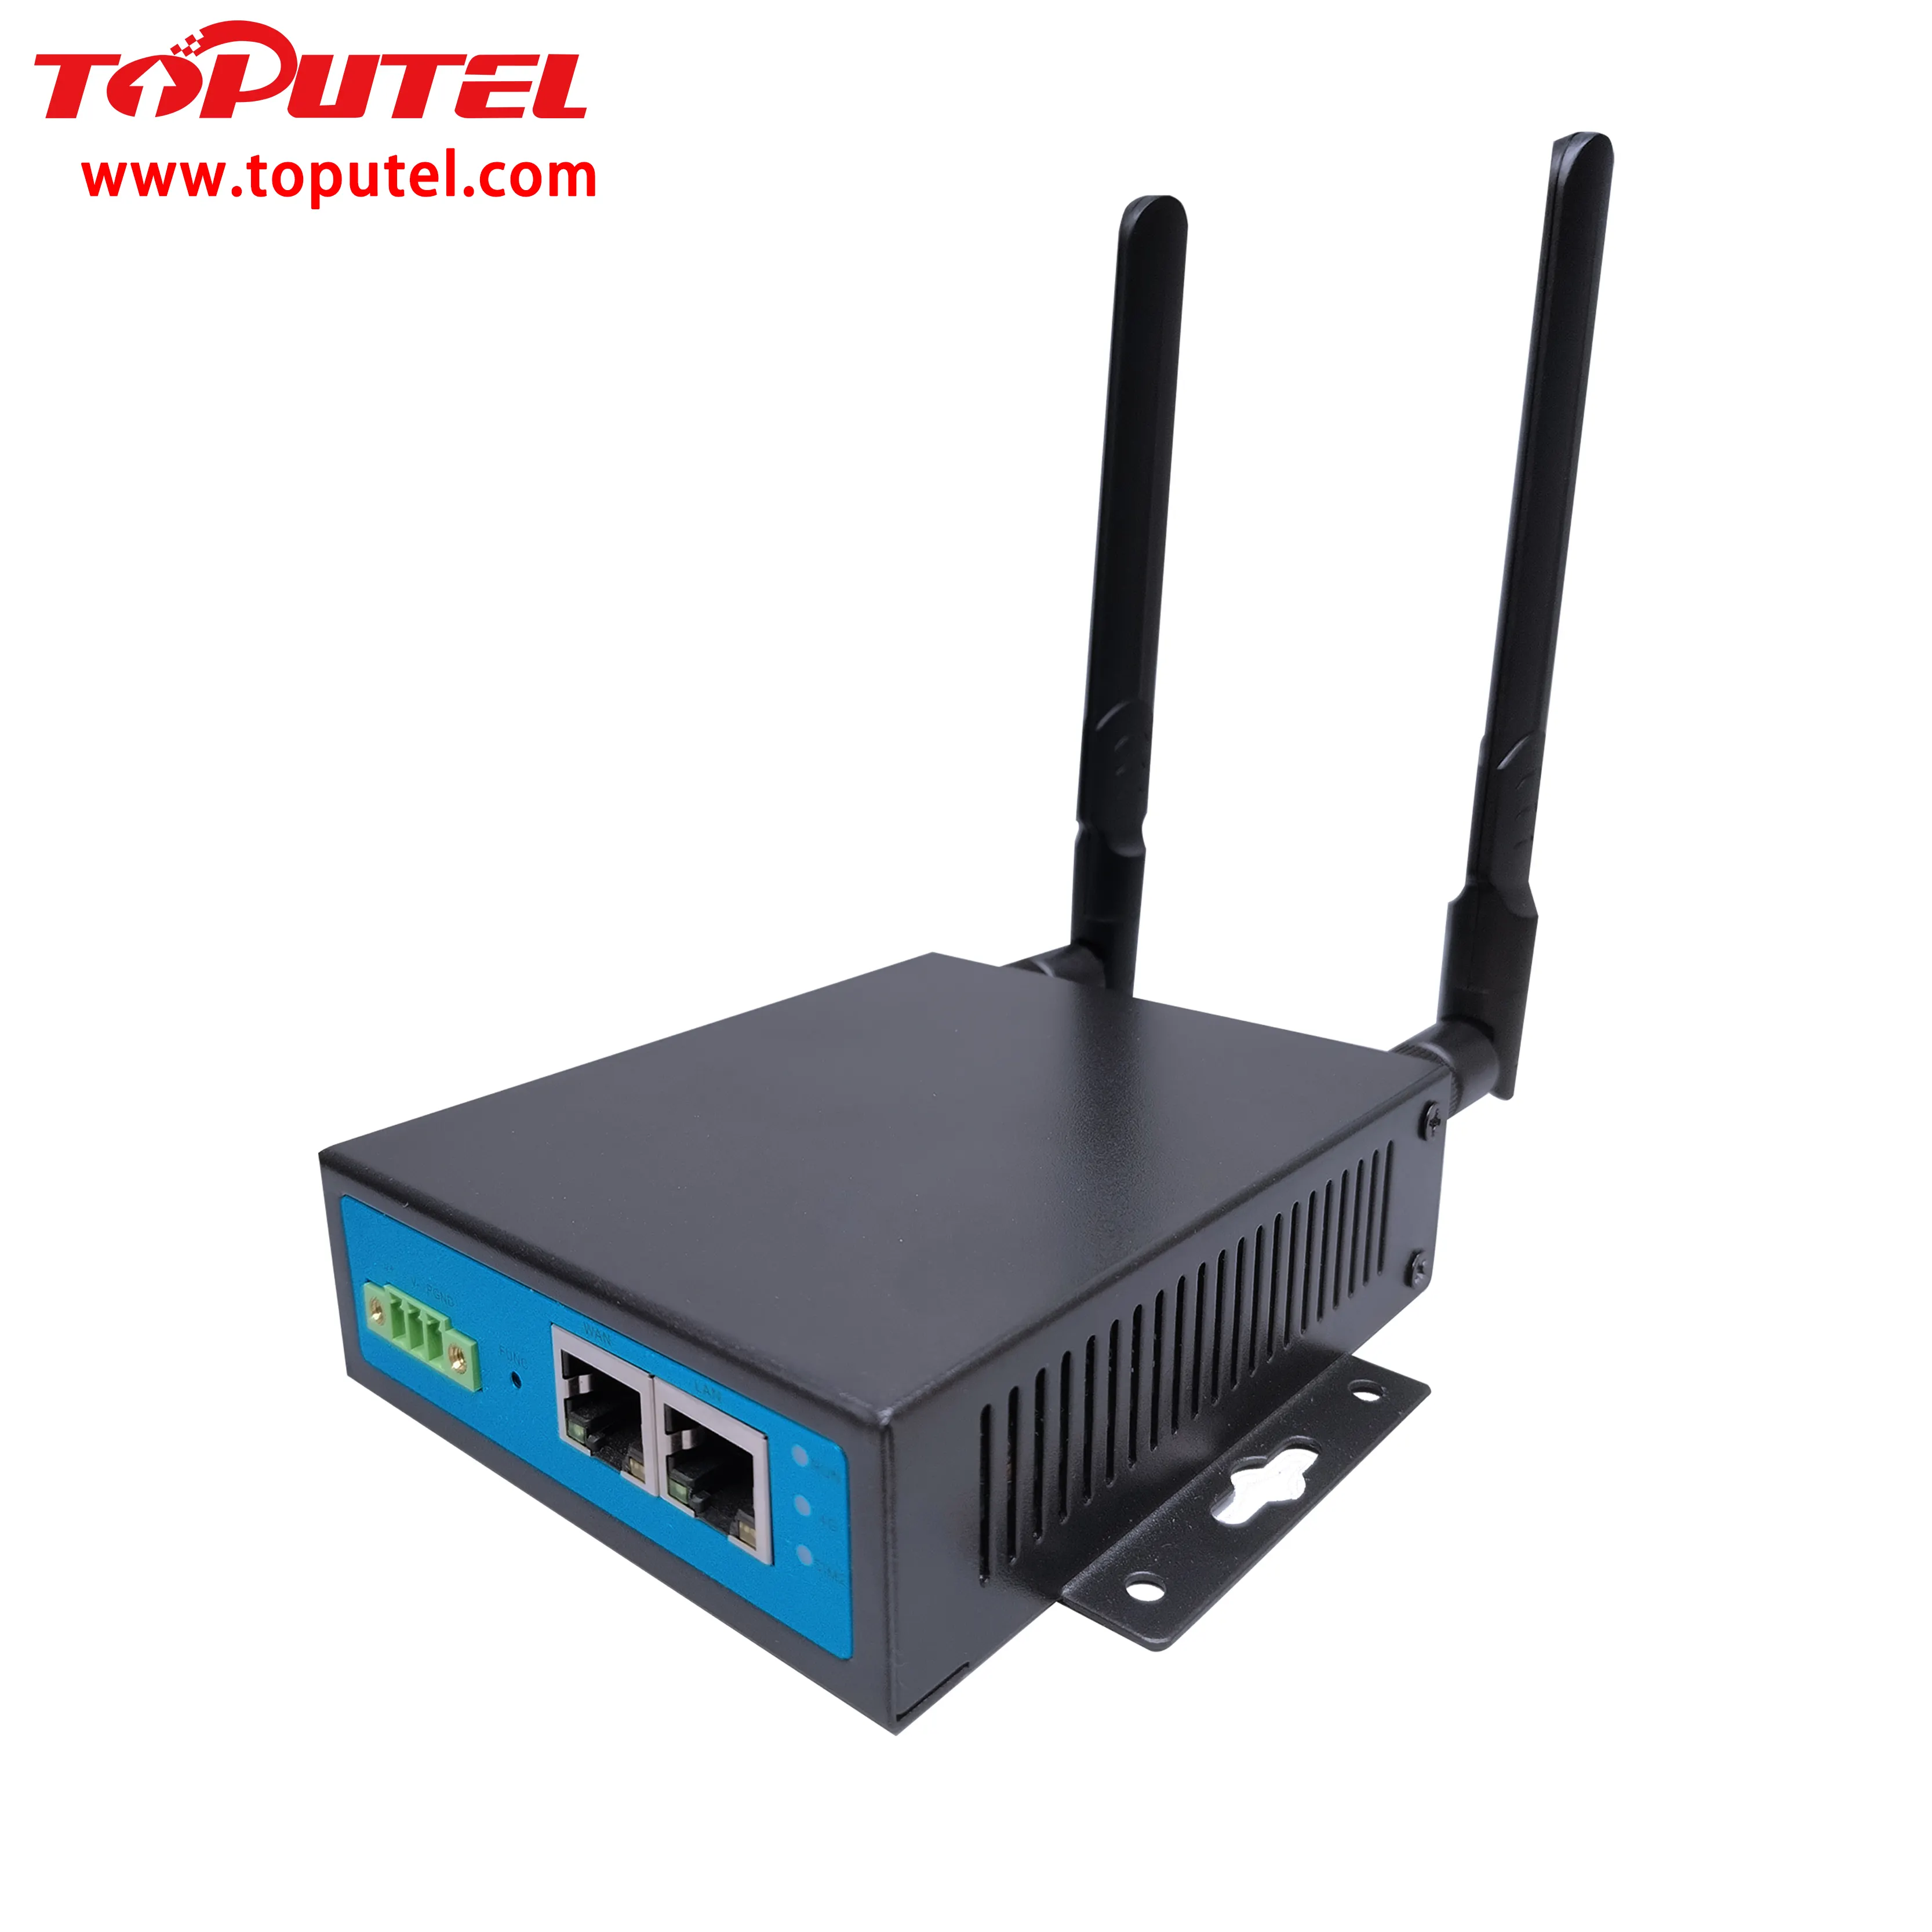 Router industriale 4G per personalizzazione VPN IoT + software gratuito per la gestione dei dispositivi + doppia SIM + uscita relè + RS485 Modbus a MQTT